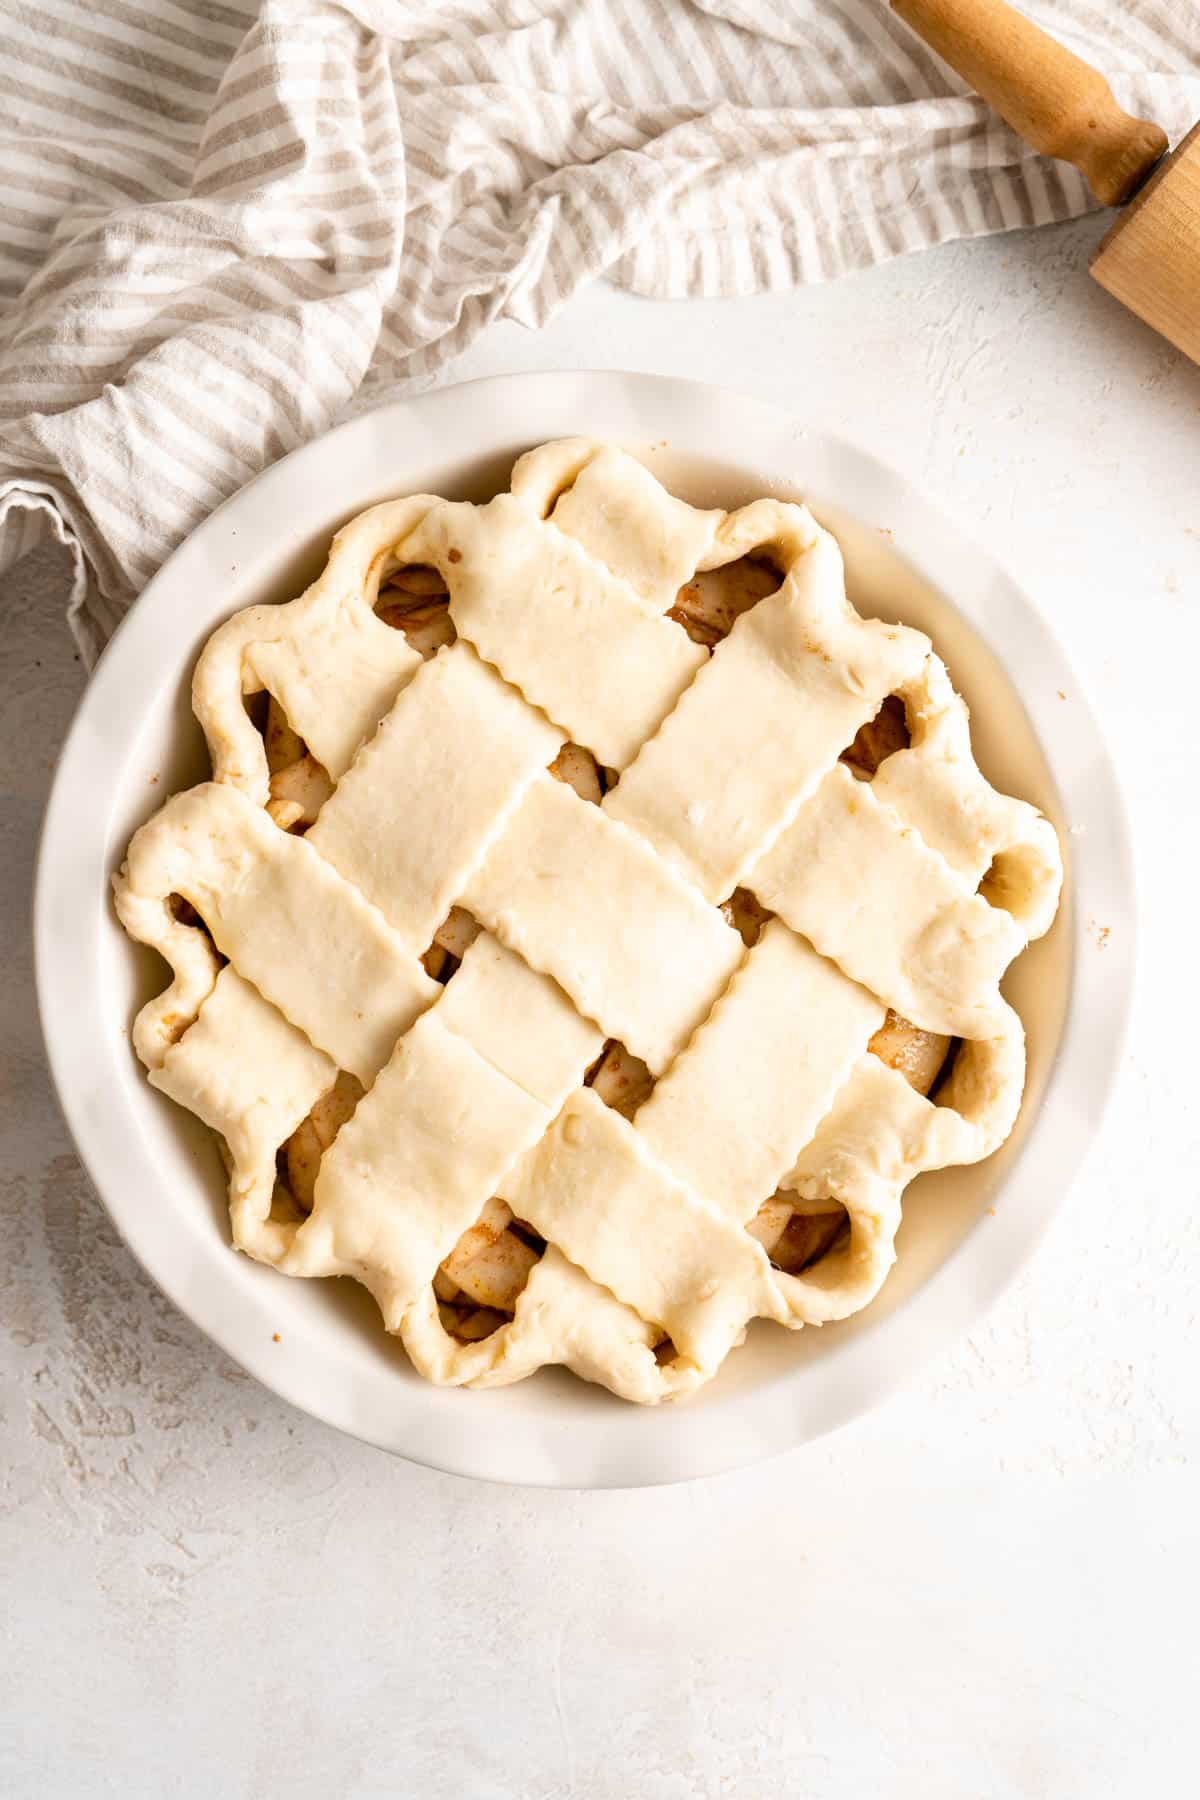 lattice pie crust over pears